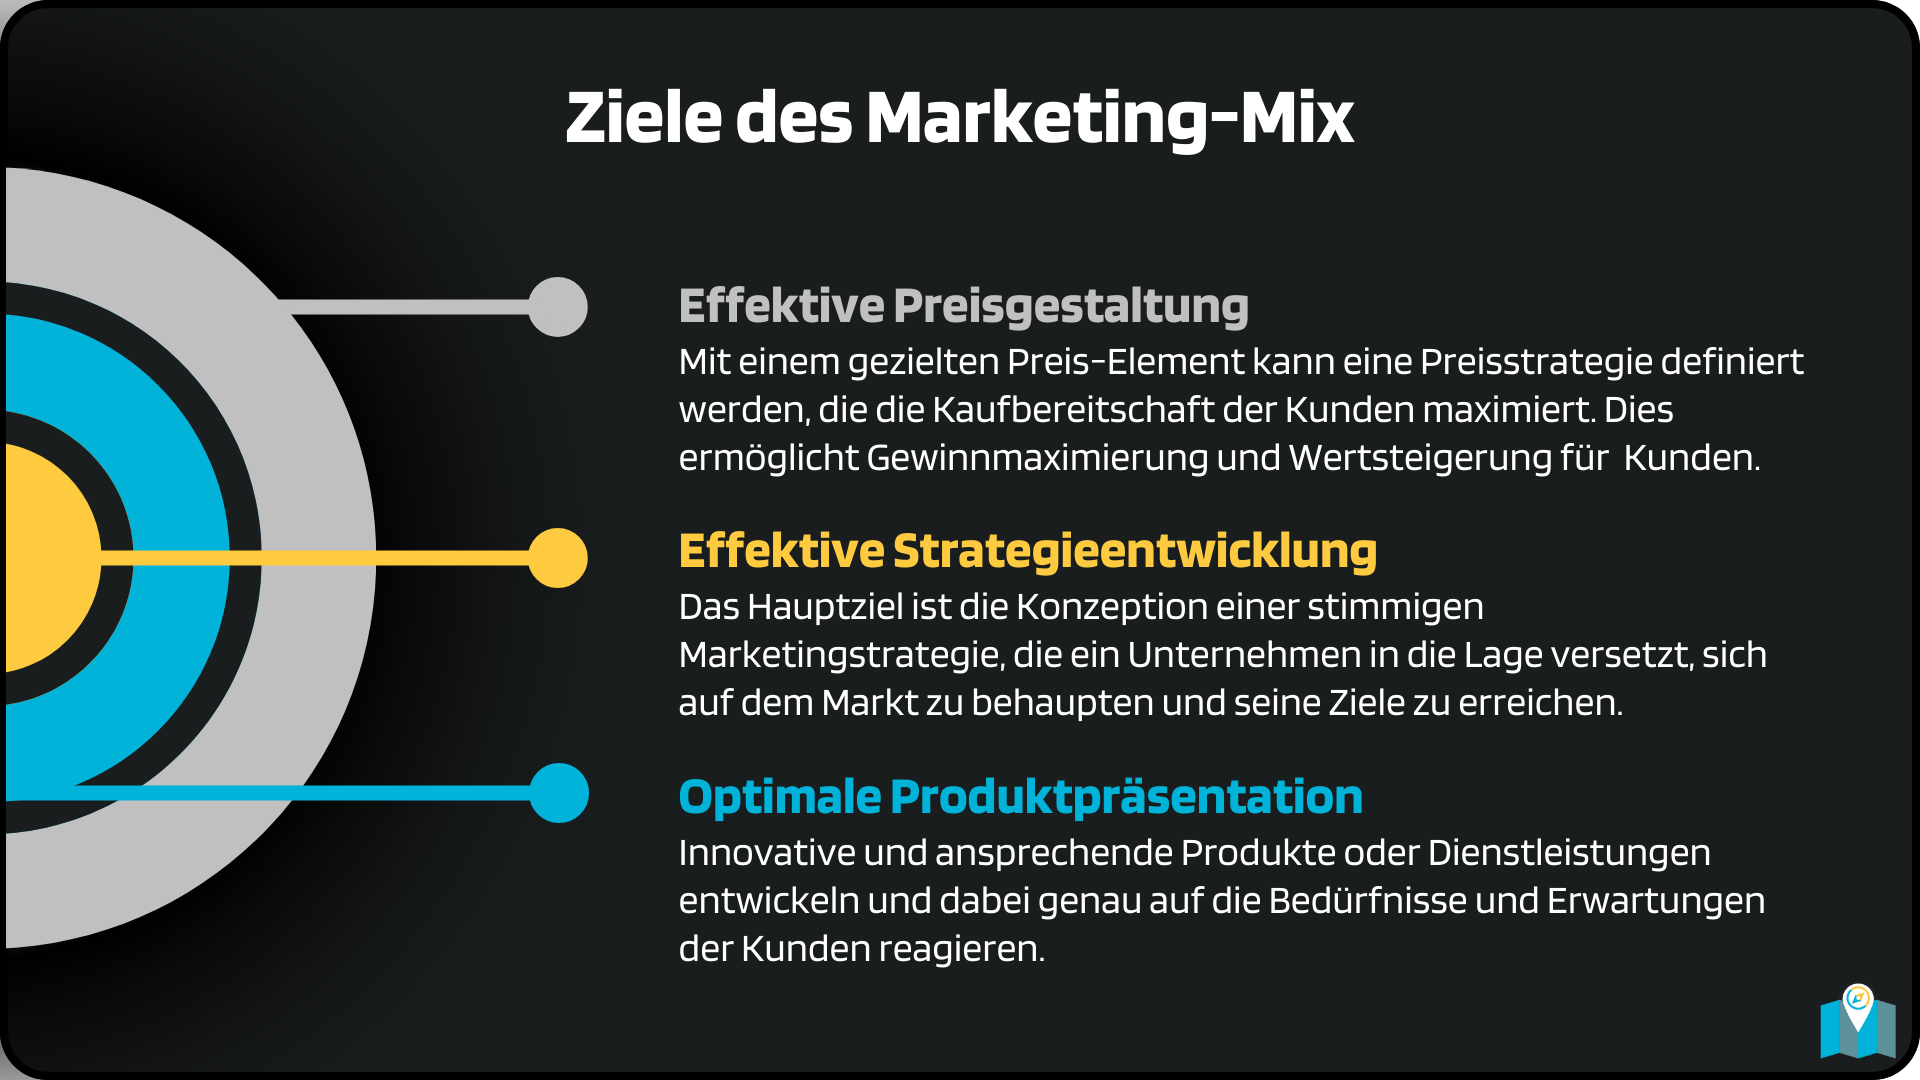 Die Ziele des Marketing-Mix